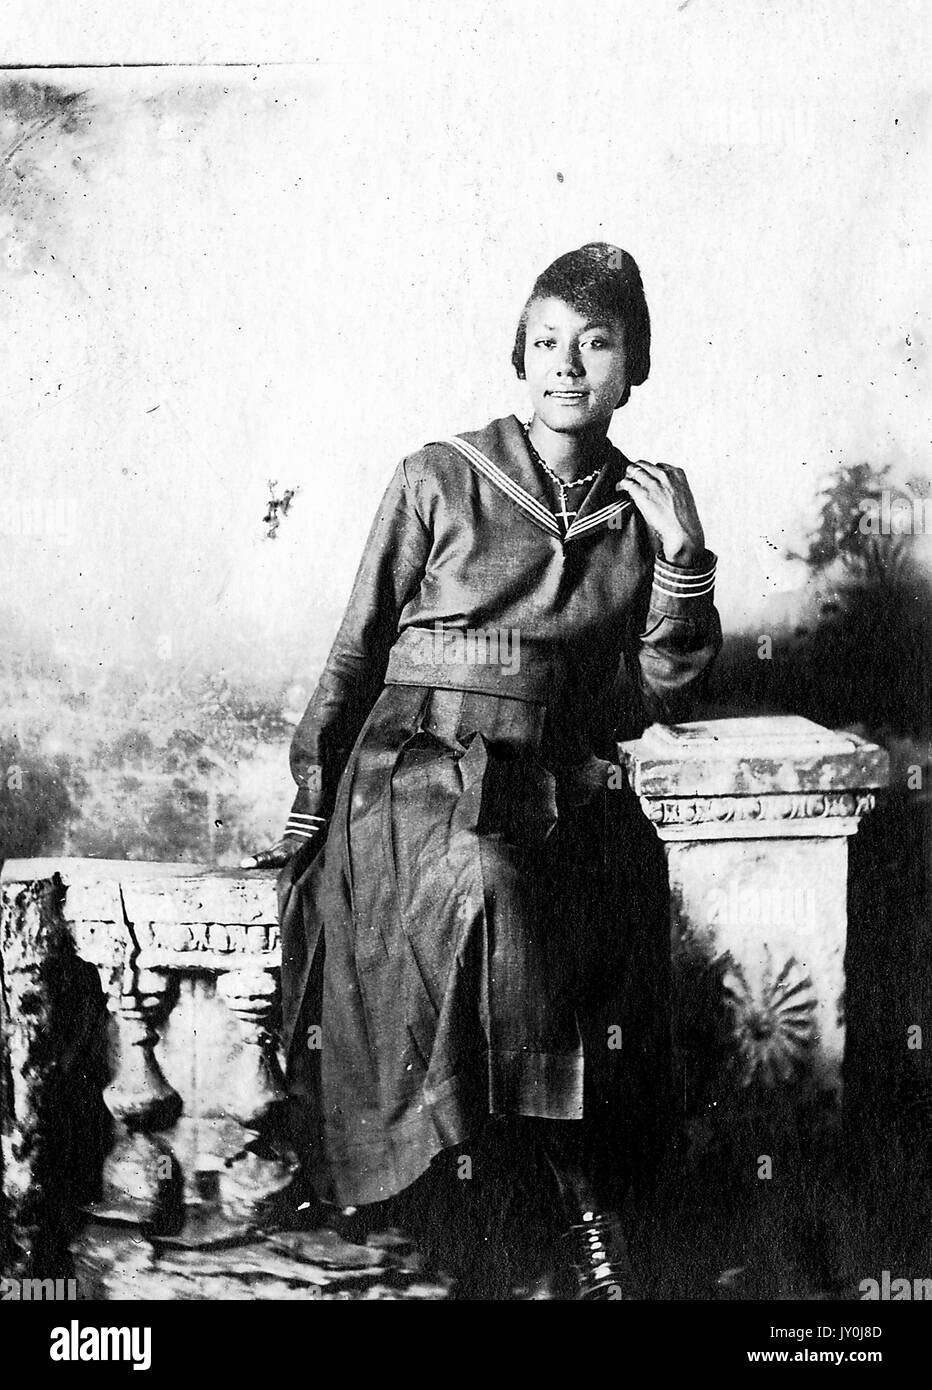 Porträt einer afroamerikanischen Frau, die auf Strukturrequisiten sitzt, einen langen dunklen Rock trägt und ein langärmeliges Oberteil trägt, ihren linken Ellbogen auf eine Struktursäule stützt, 1915. Stockfoto